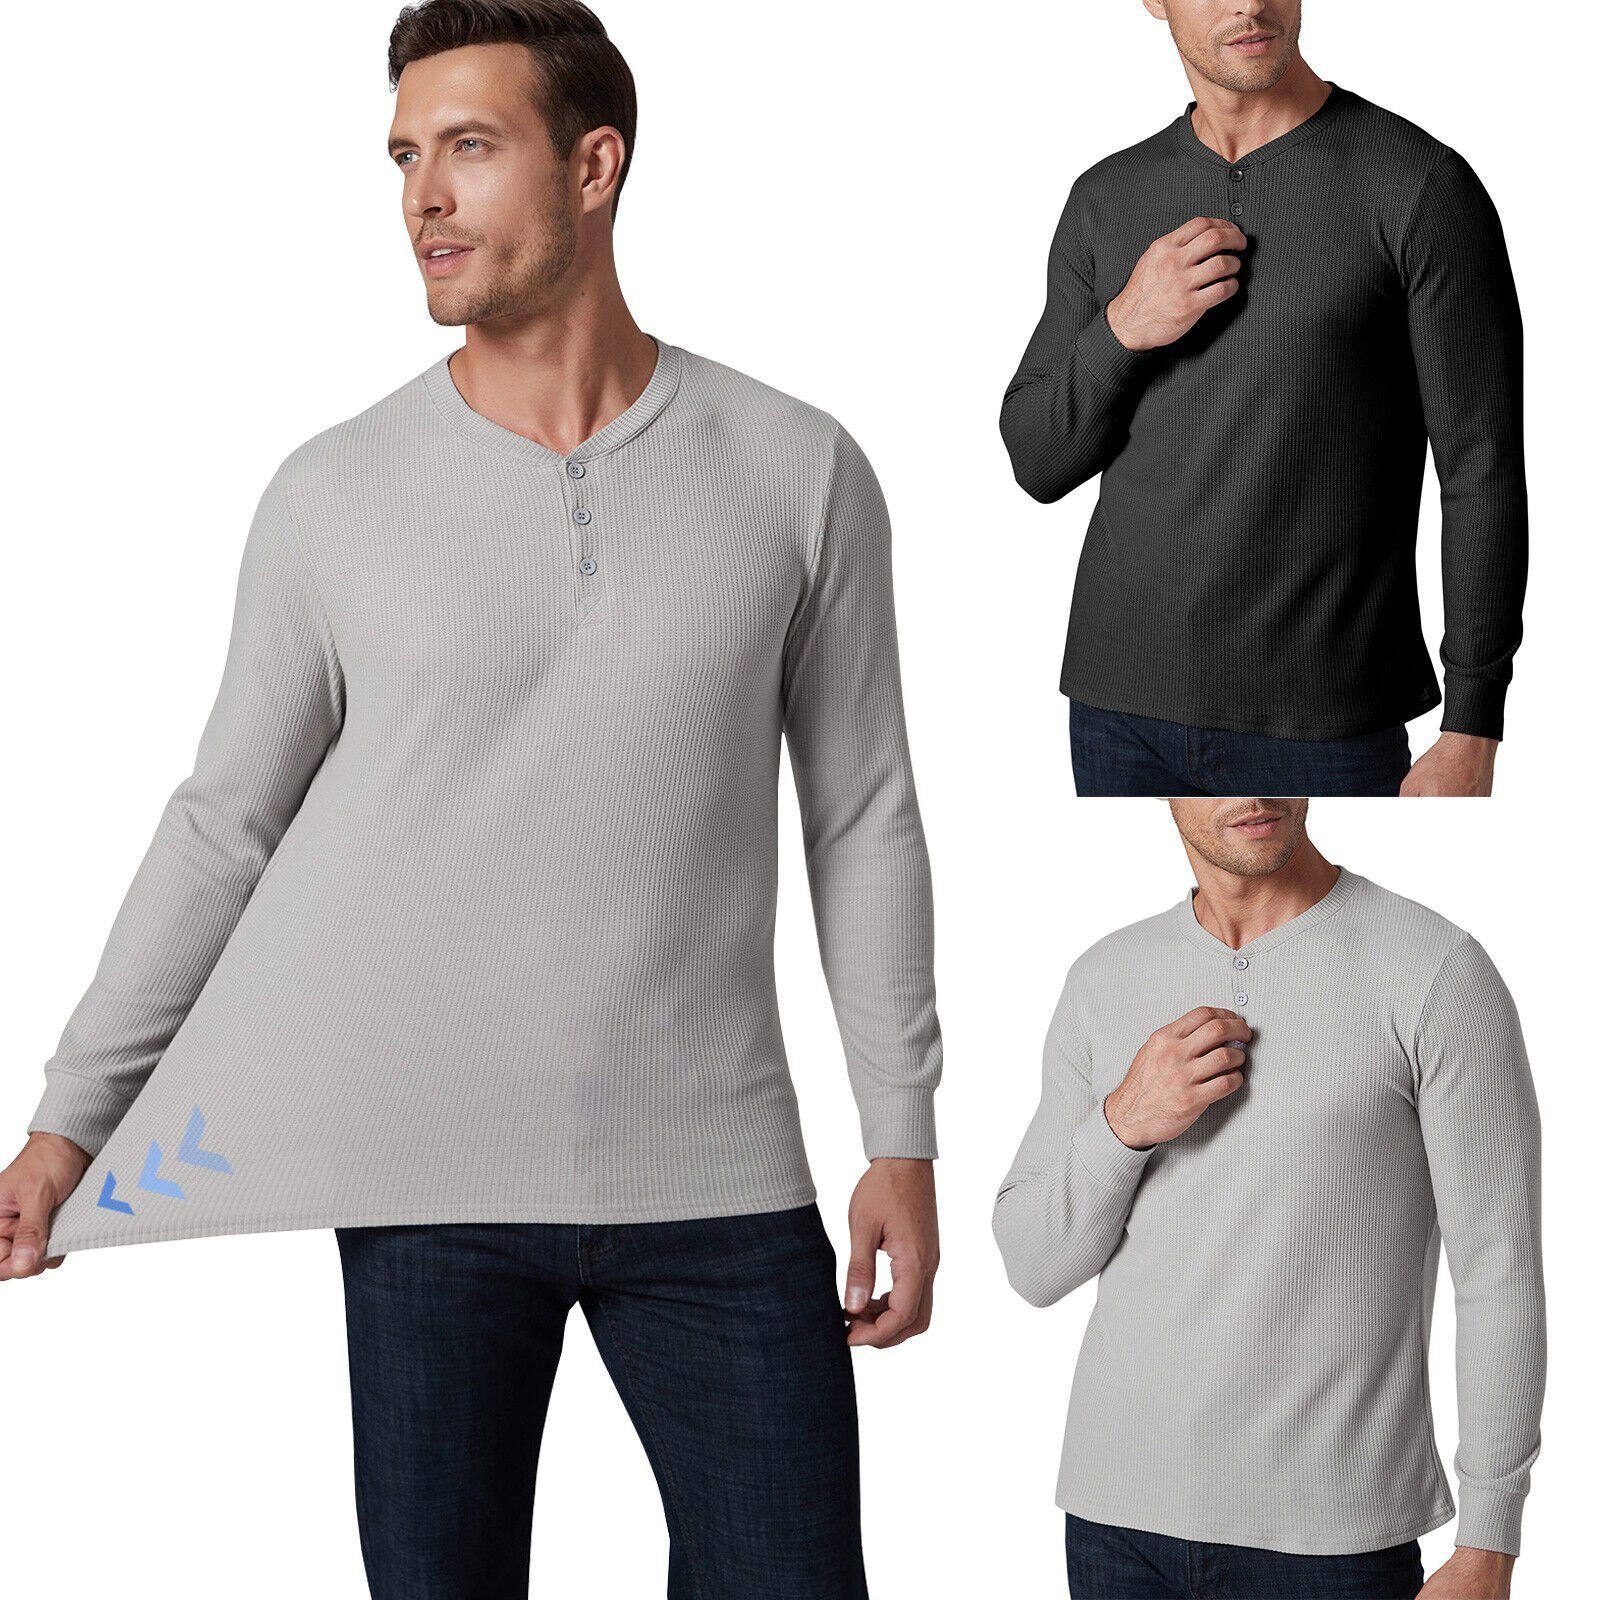 MEETYOO Rundhalsshirt Herren Langarm Shirt (Thermal Henley Knopfleiste, Warm Waffle Knit Winter T-Shirt) mit Großen Knöpfen Grau